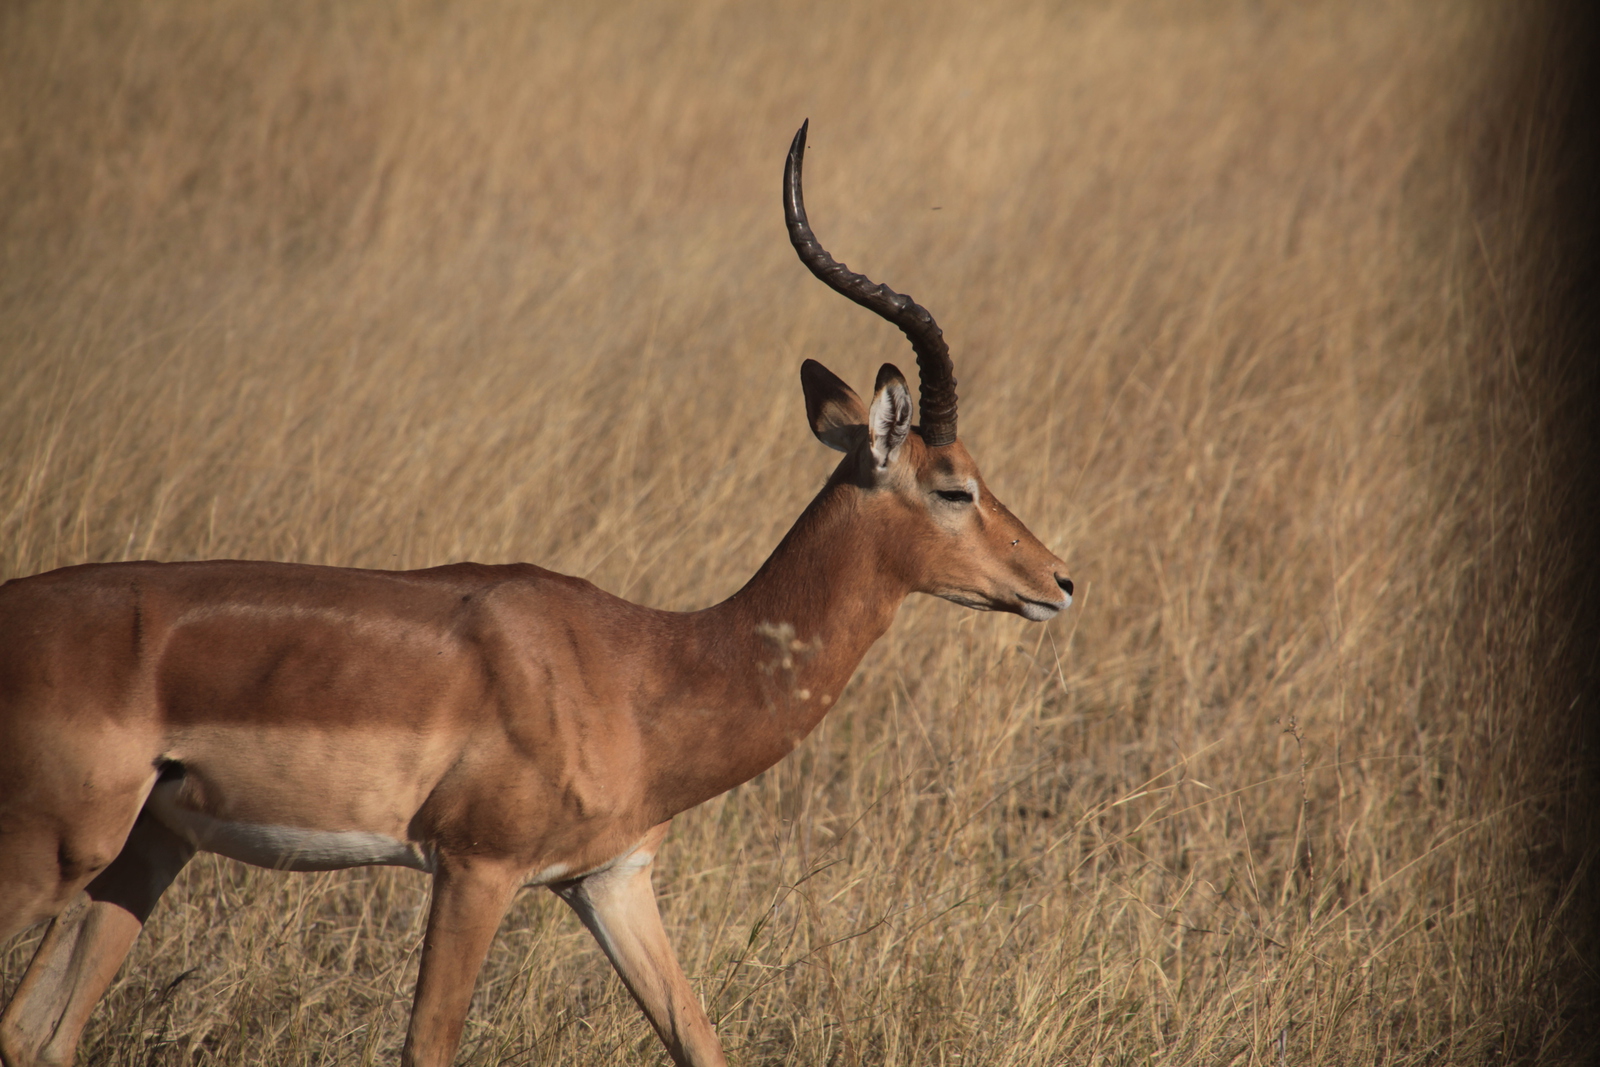 Moremi: Impala (Aepyceros Melampus)